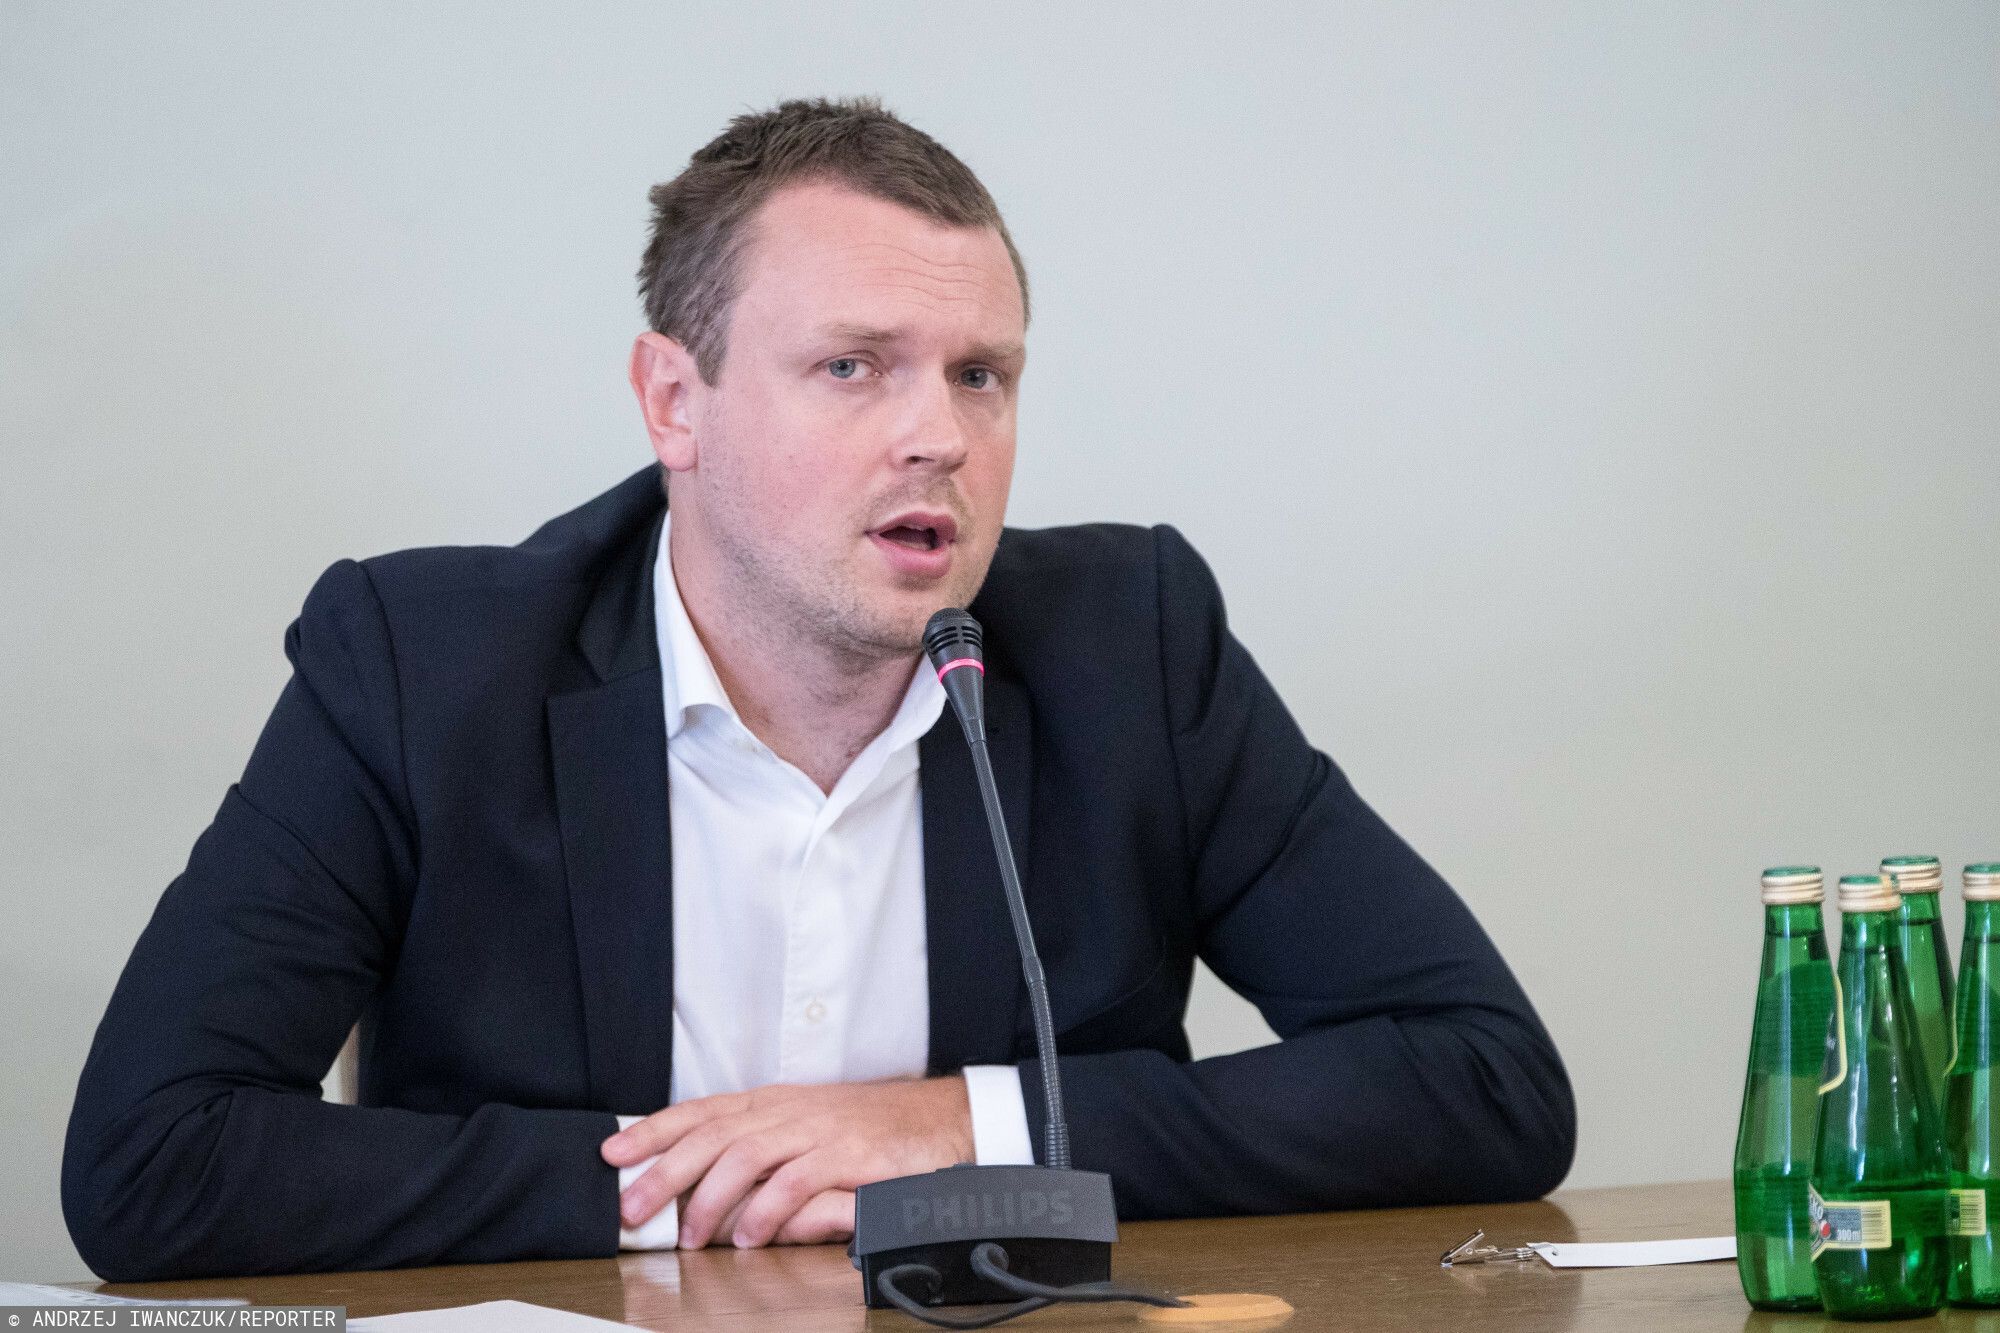 Michał Tusk ANDRZEJ IWANCZUK/REPORTER